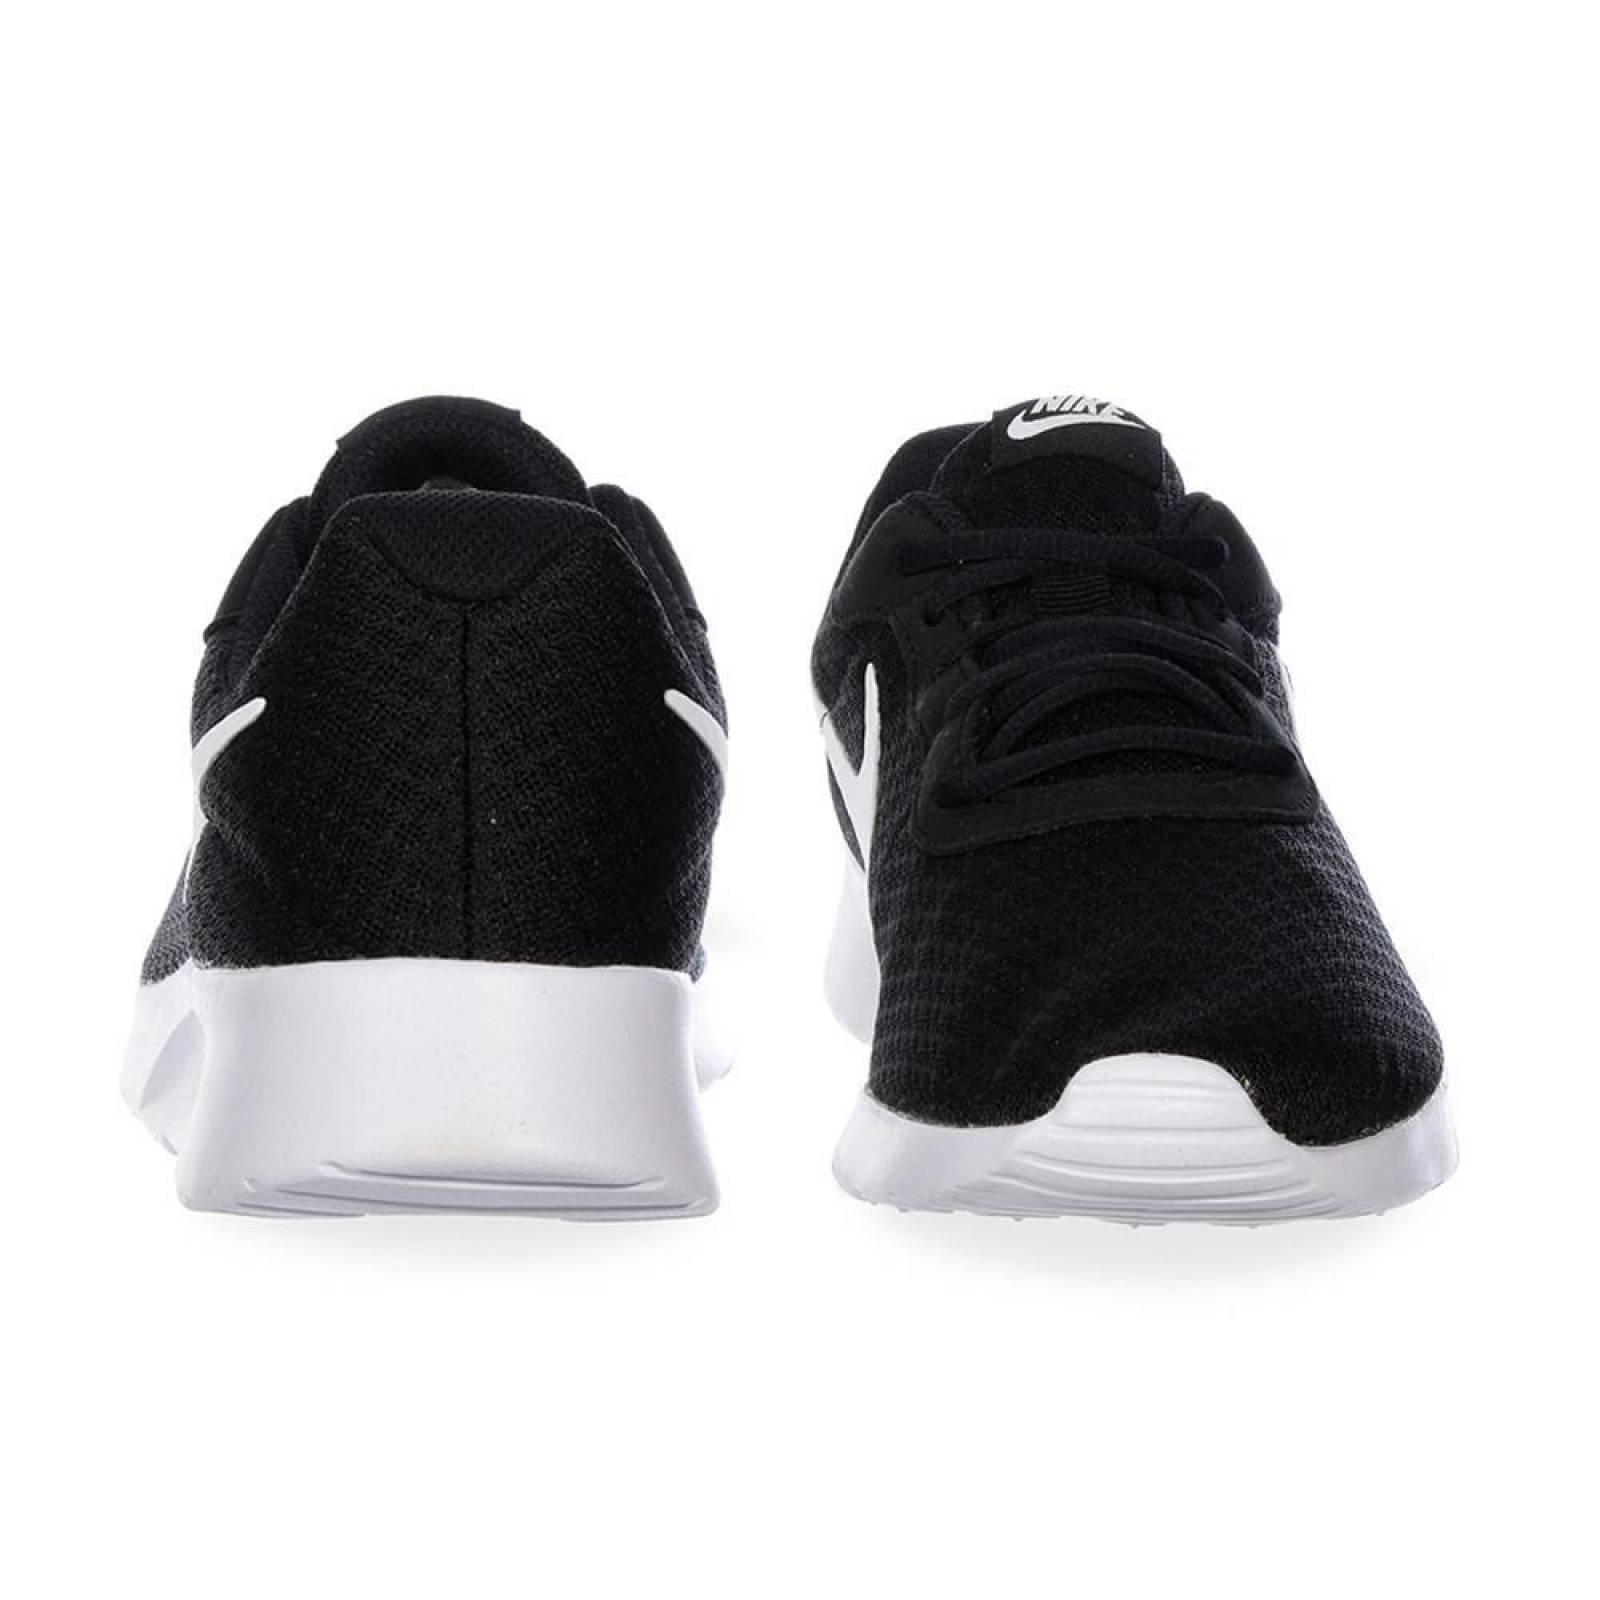 Tenis Nike Tanjun - 812654011 - Negro - Hombre 